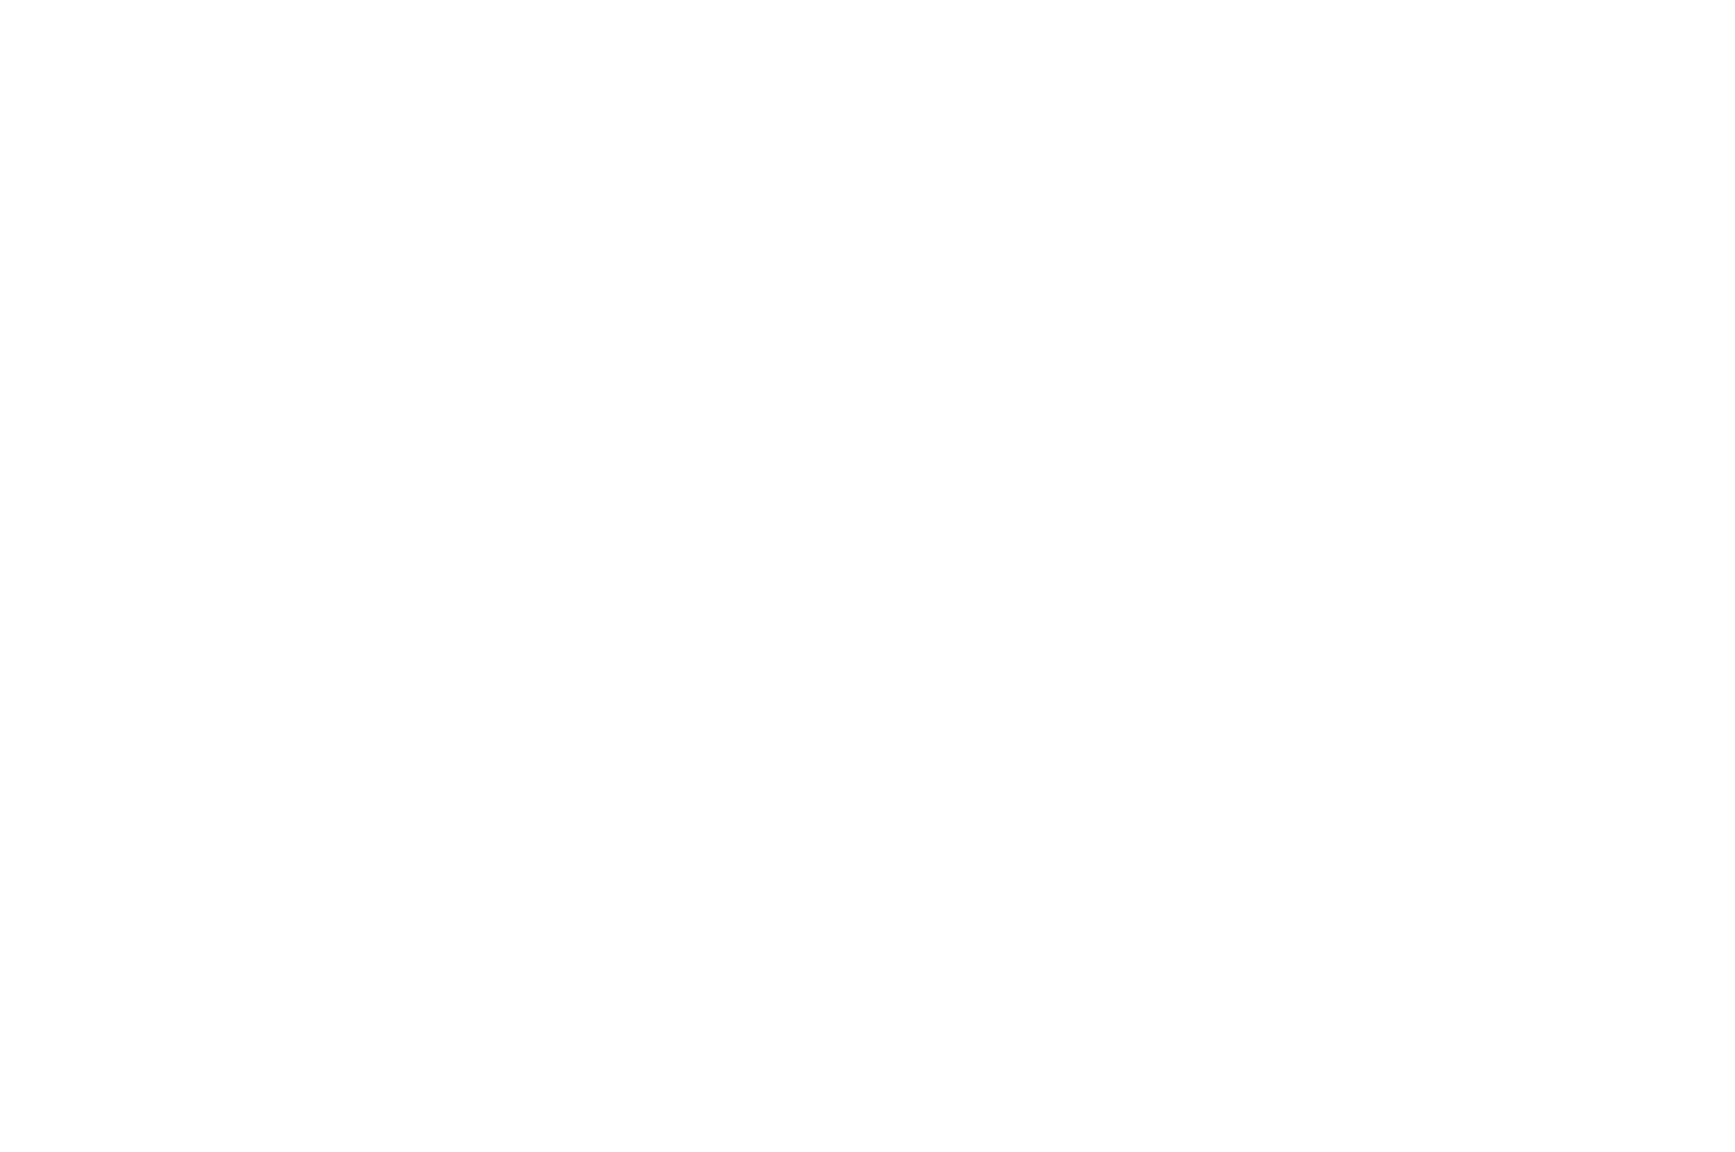 AWARD NOMINEE - LA FTE DU CLIP DE LYON - ONEFIFTY - INSTITUTIONAL LIVES